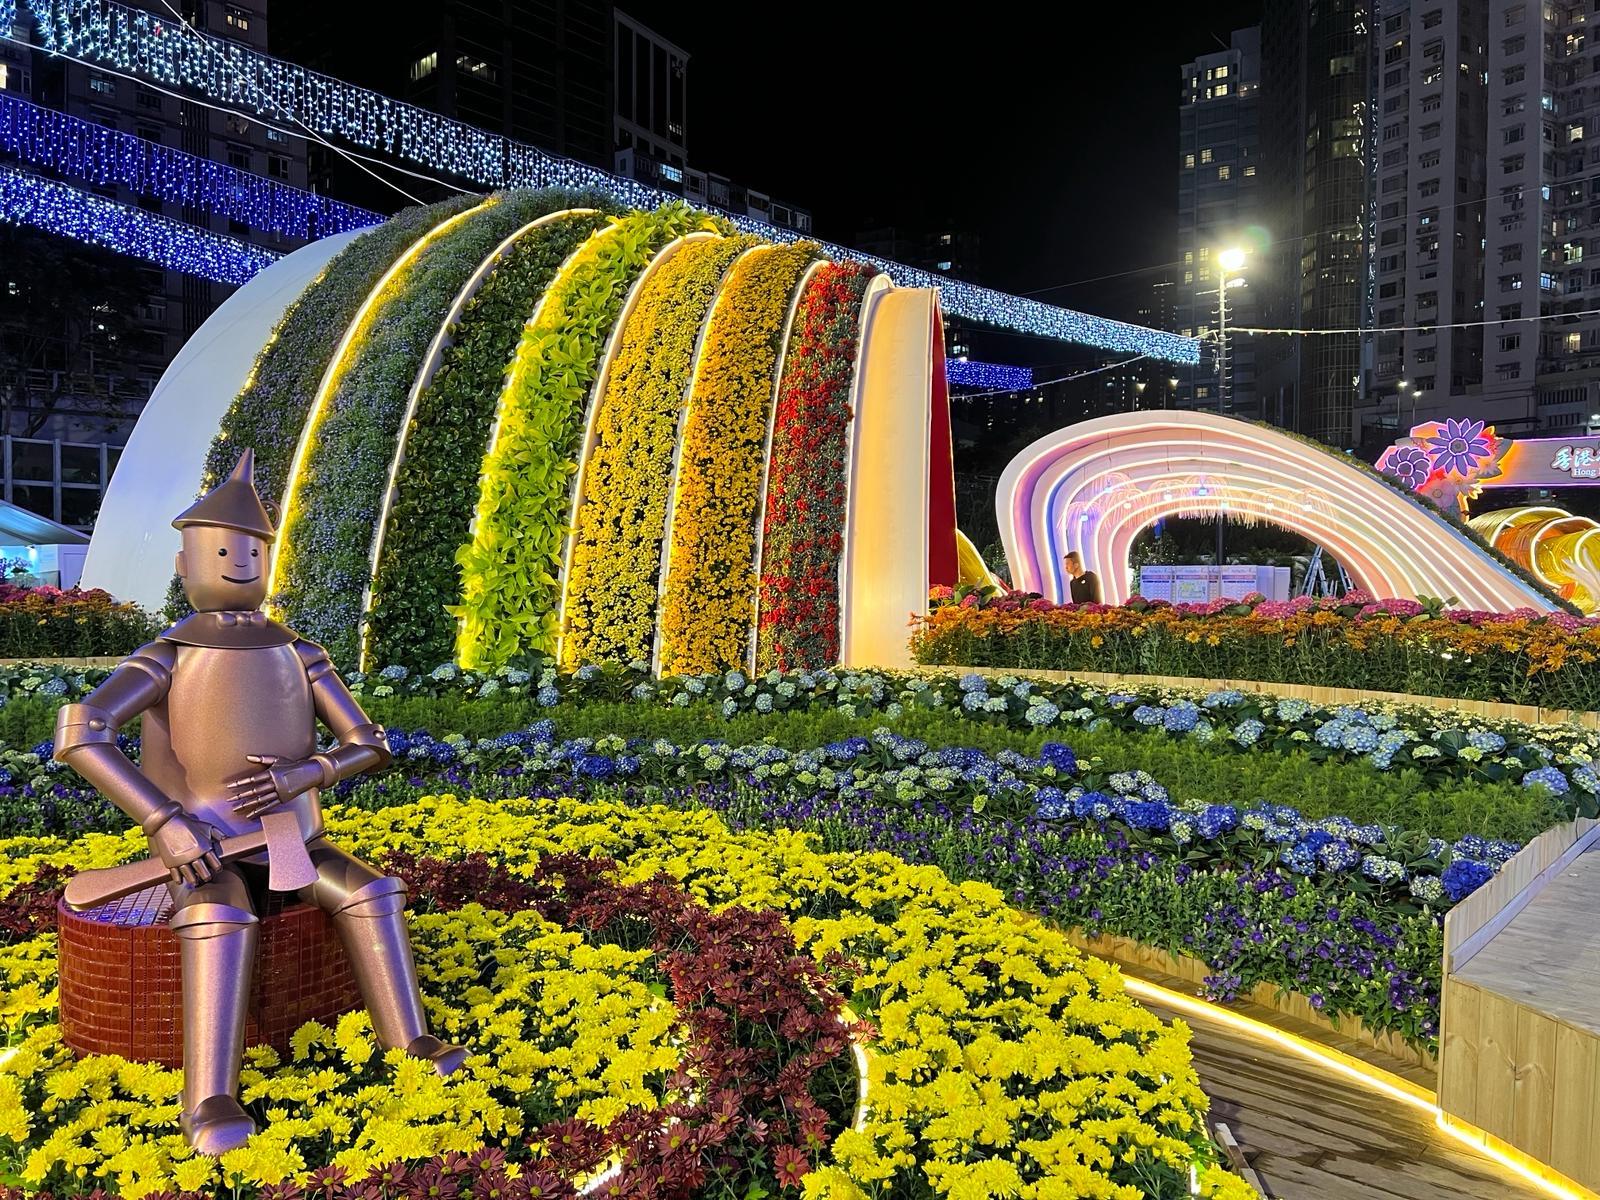 每年一度的賞花盛事香港花卉展覽今日（三月十五日）在維多利亞公園開幕，展出約四十二萬株花卉，包括約四萬株主題花香彩雀。圖為《綠野仙蹤》園圃，在夜幕下別有一番景致。